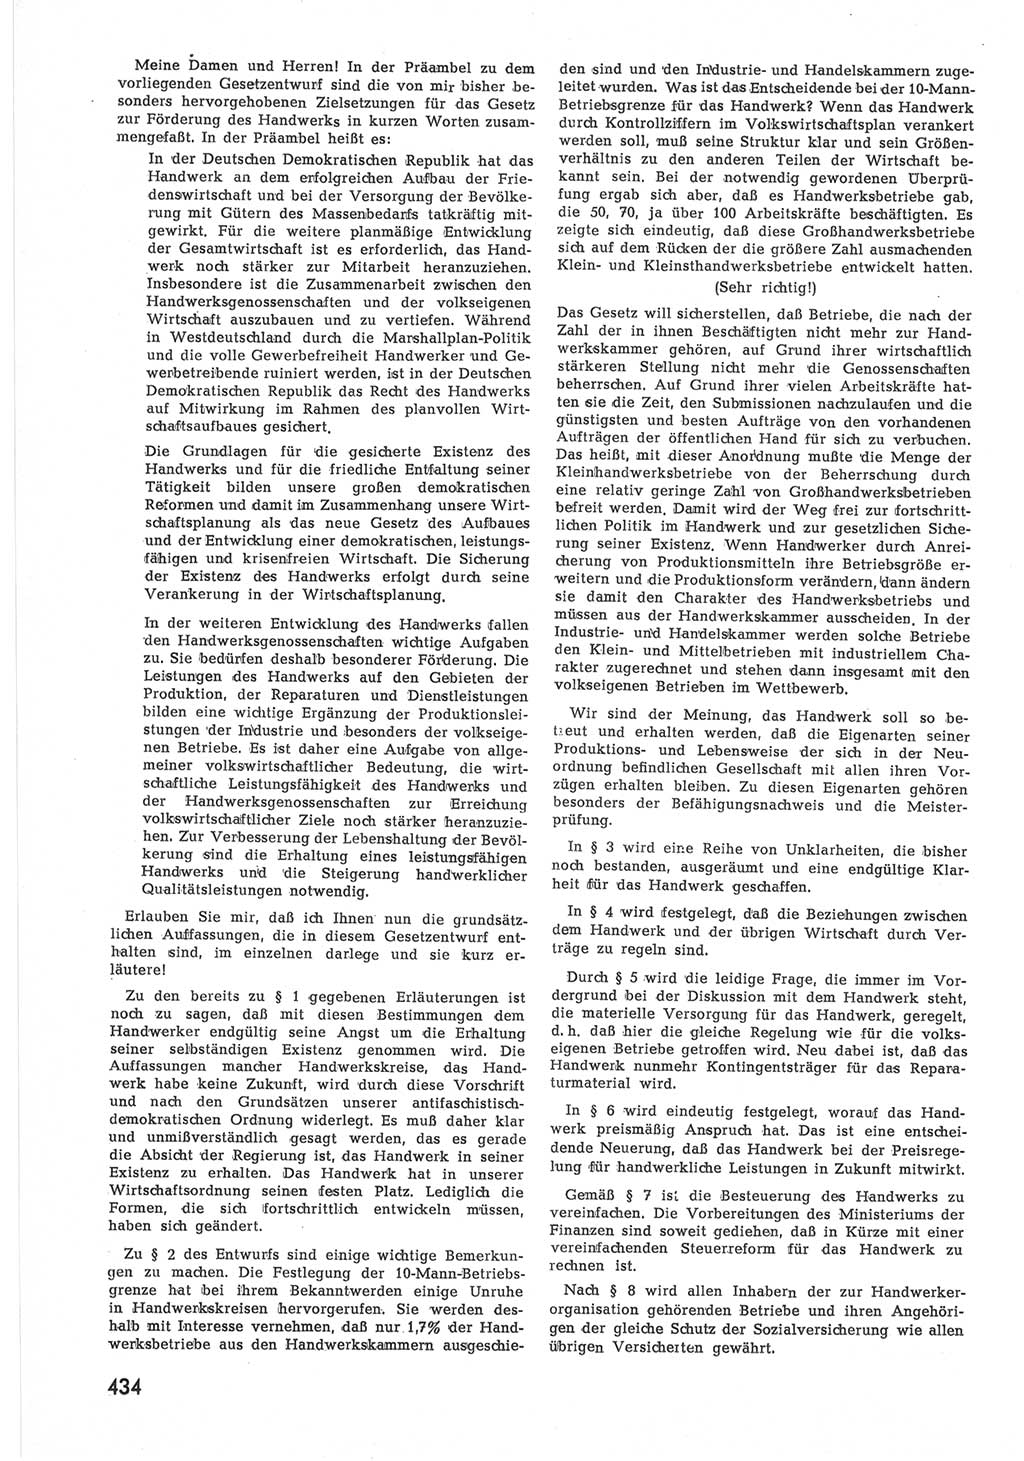 Provisorische Volkskammer (VK) der Deutschen Demokratischen Republik (DDR) 1949-1950, Dokument 452 (Prov. VK DDR 1949-1950, Dok. 452)